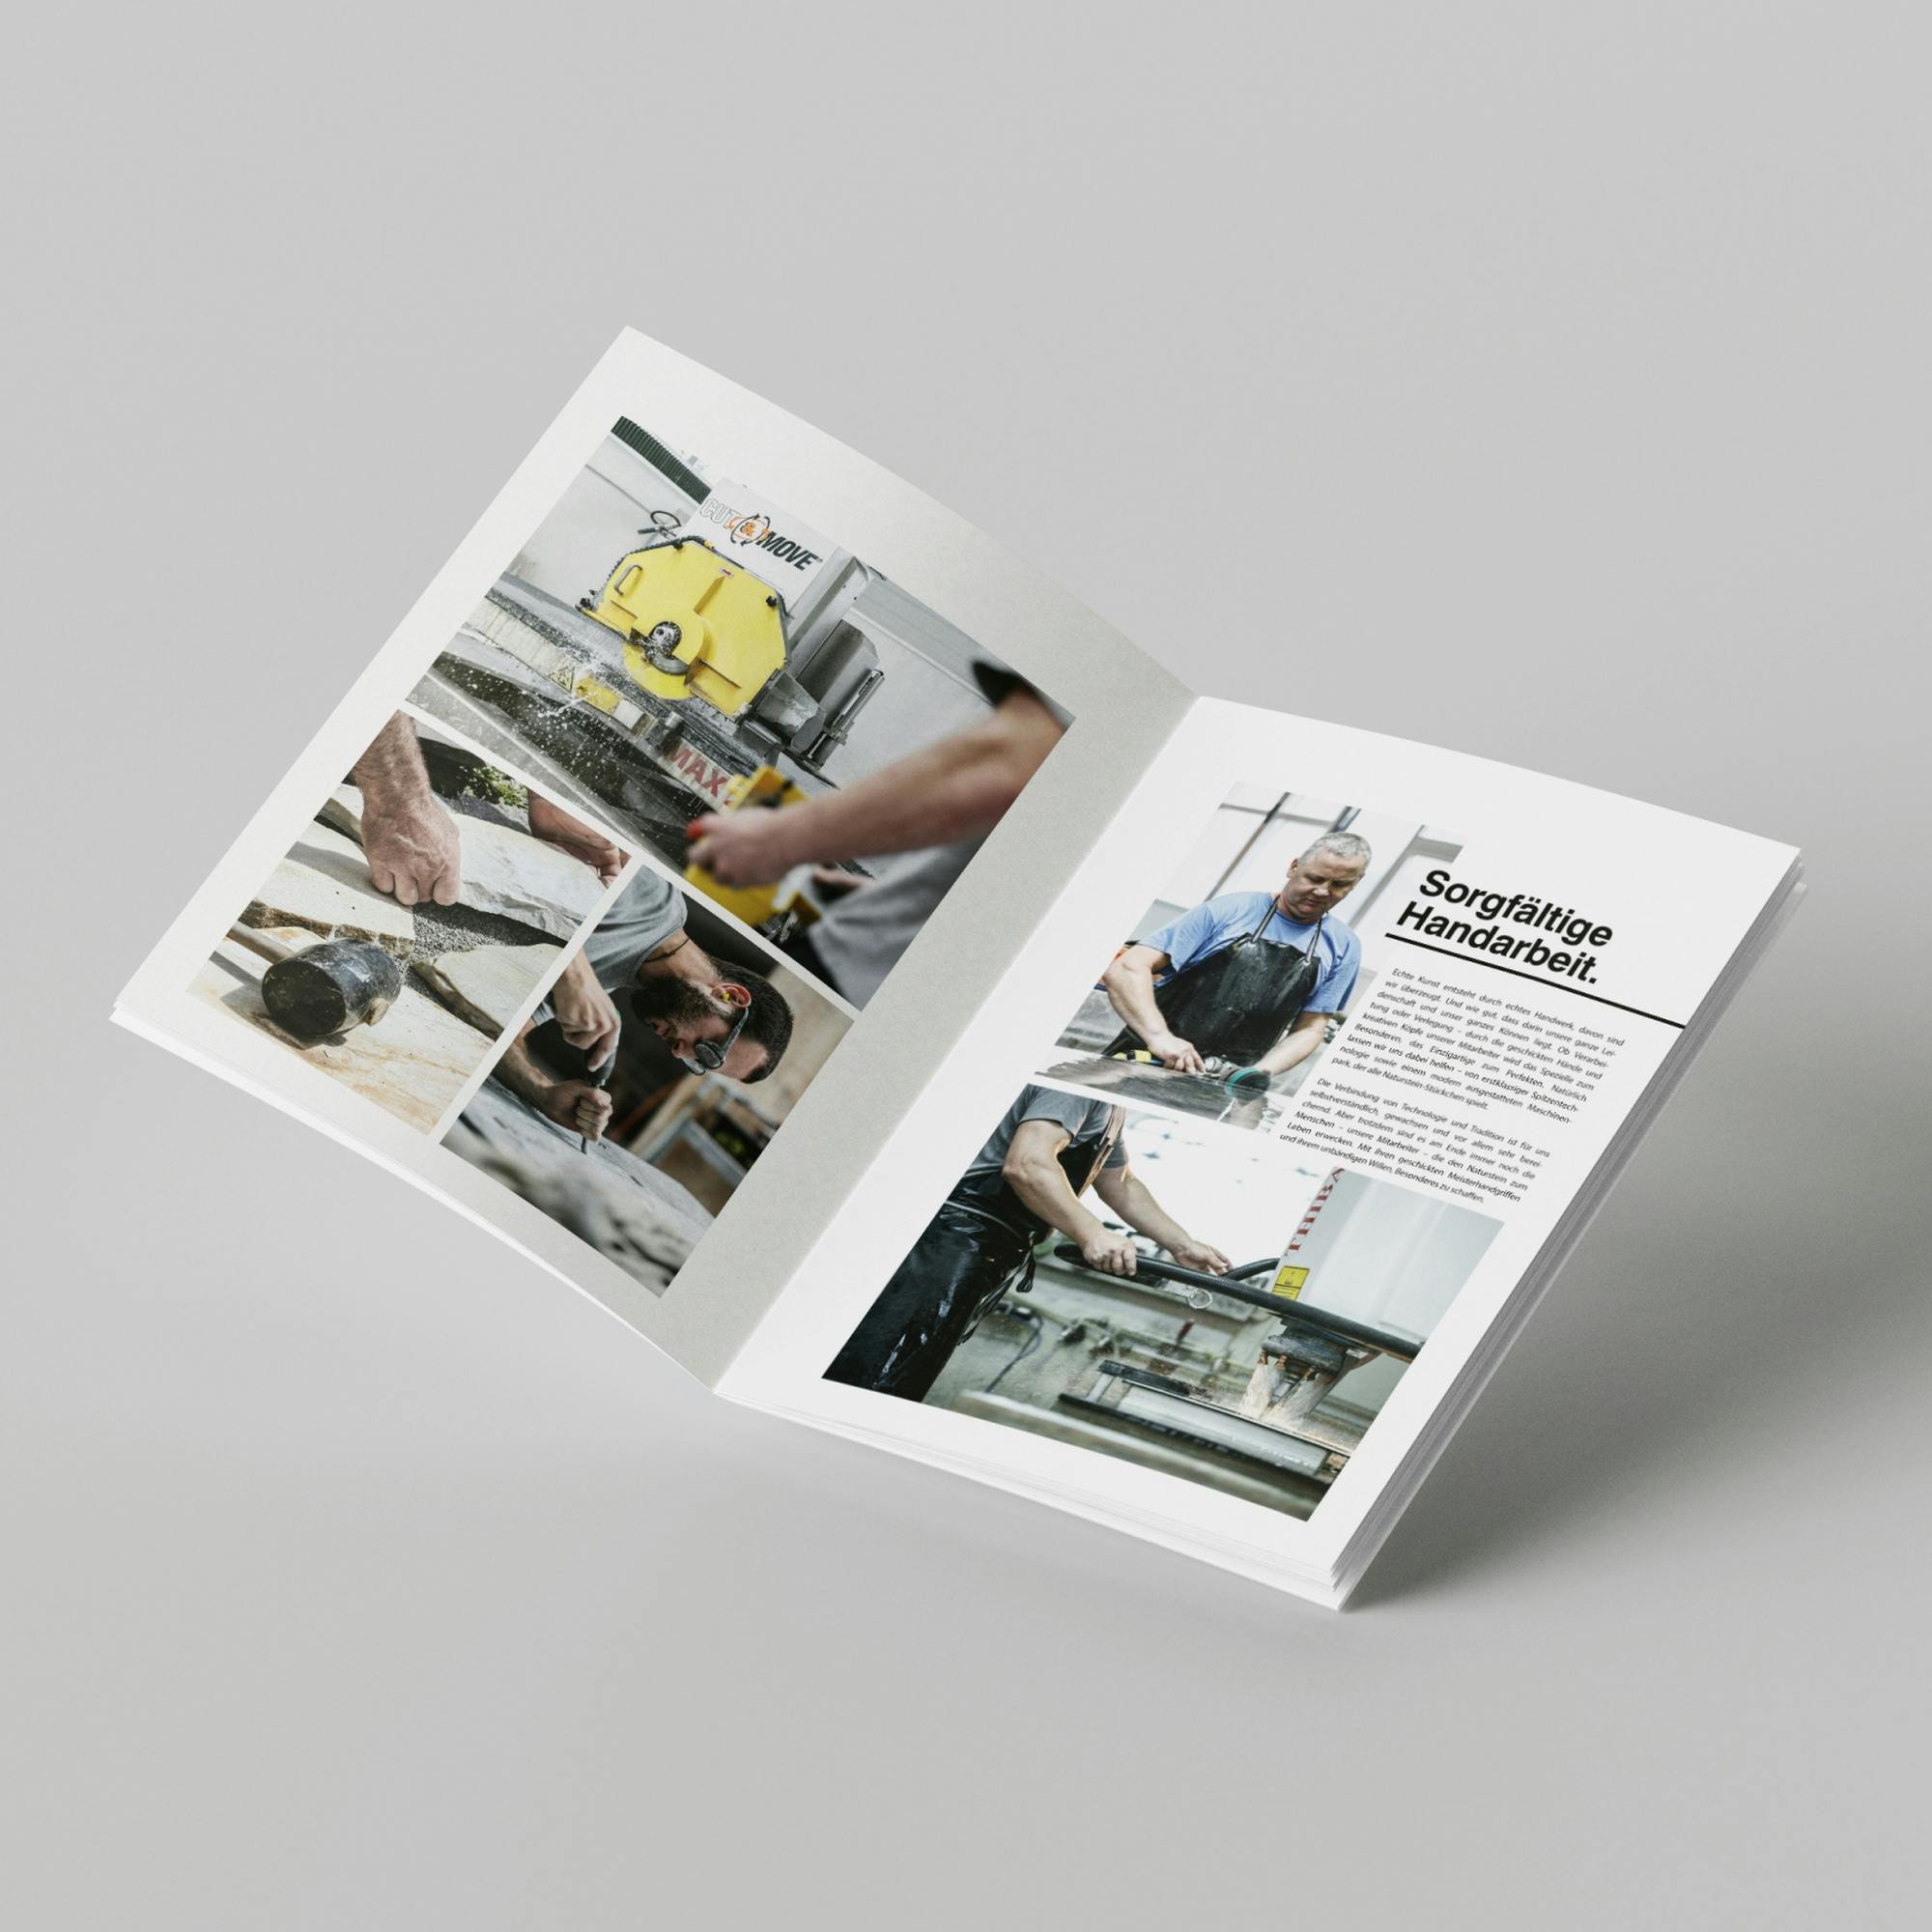 Die Innenseiten über das Thema "Handarbeit"  in der Image Broschüre von Stein Lampert zeigt Einblicke in die Werkstatt des Unternehmens © gobiq